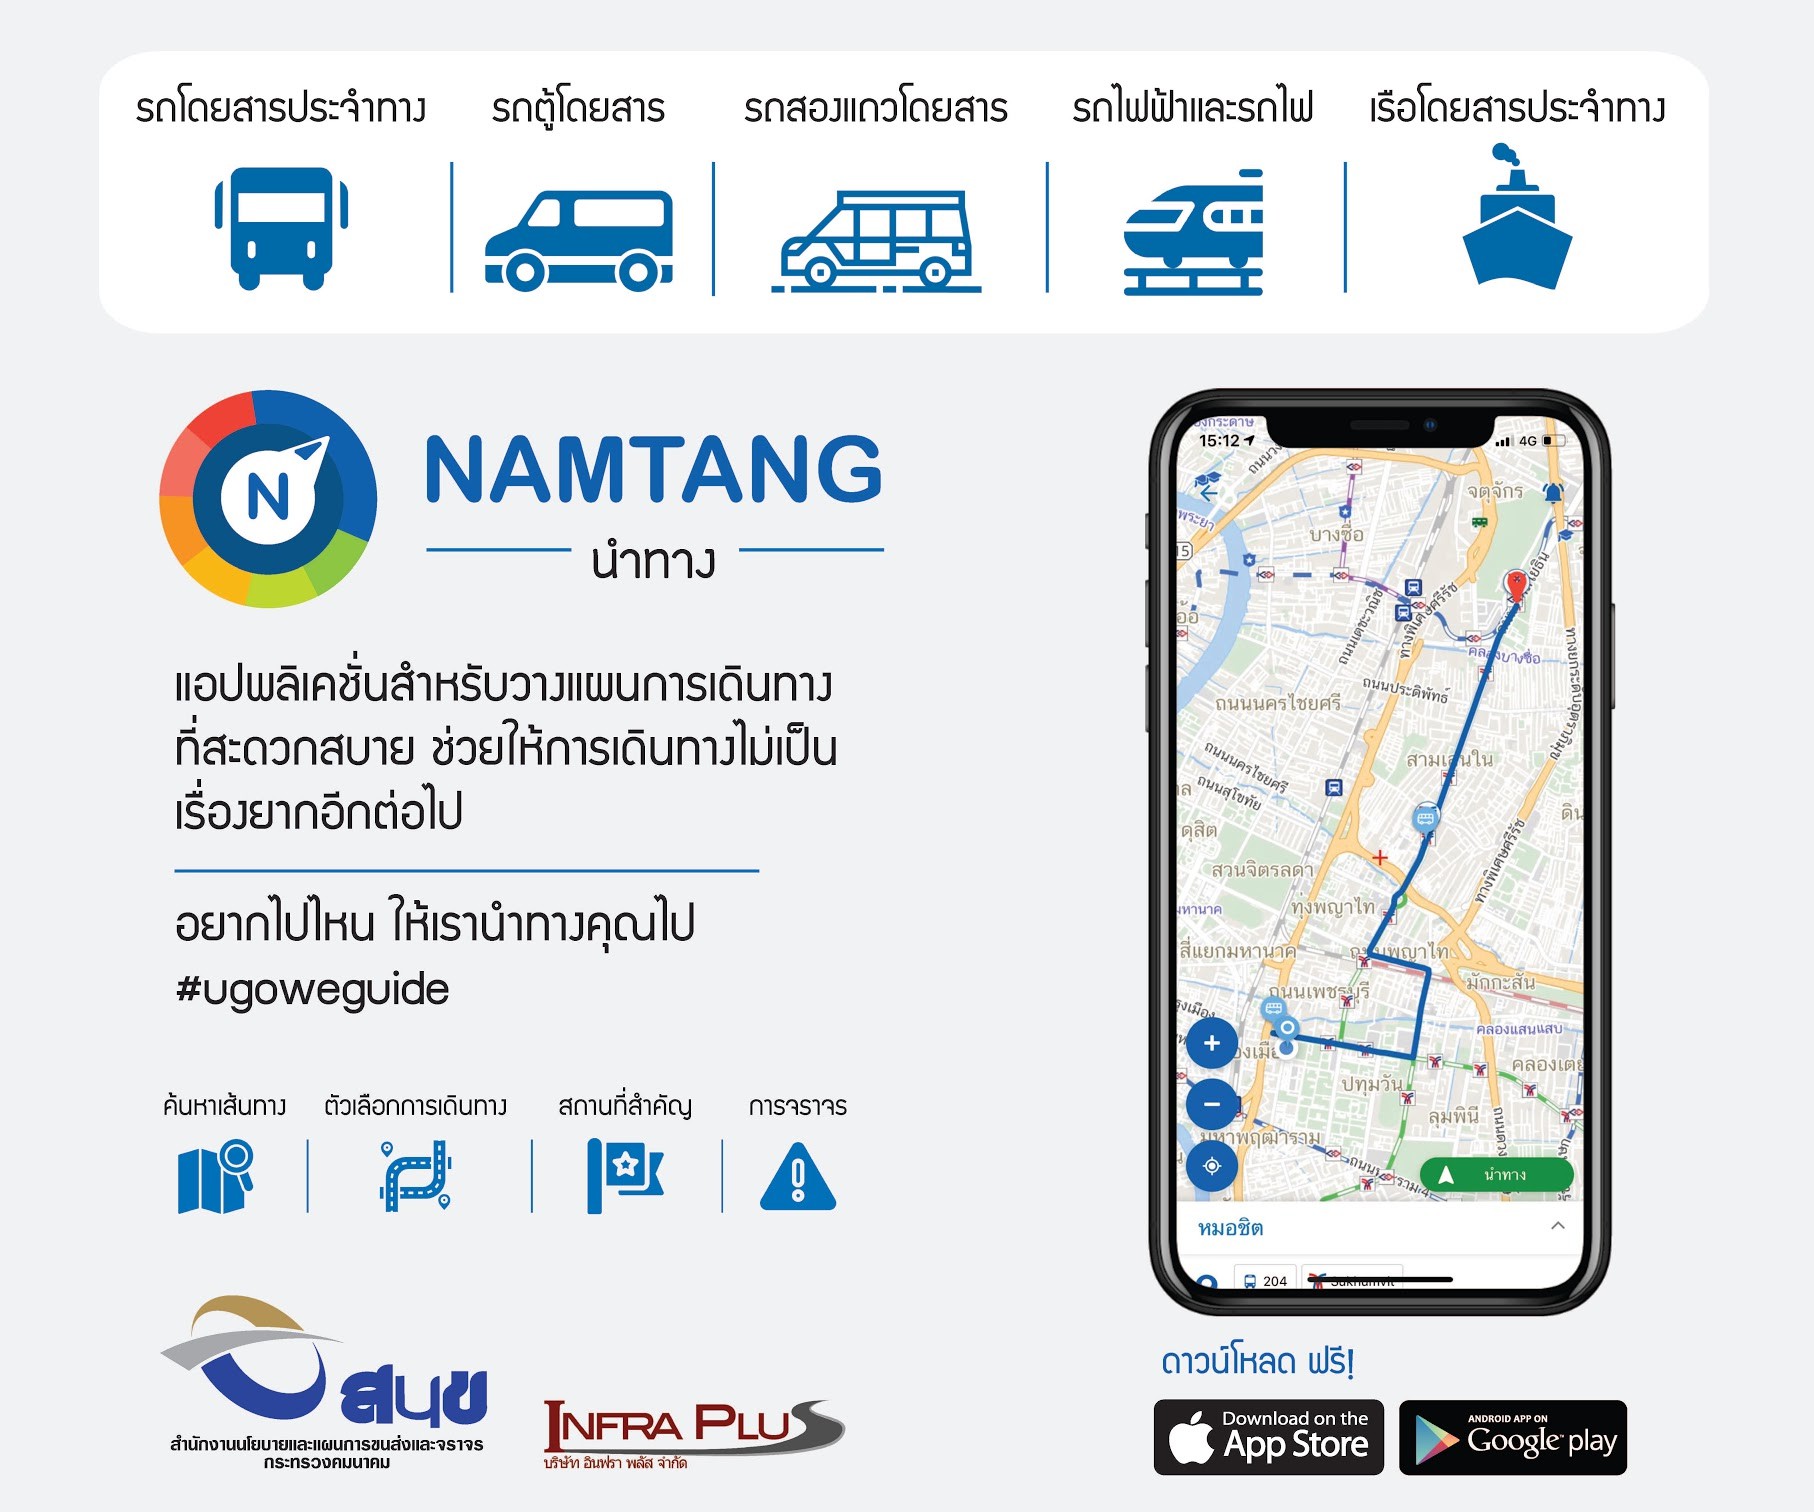 เดินทางด้วยระบบขนส่งสาธารณะอย่างมั่นใจ ด้วยนำทาง (Namtang) โดย สนข. 